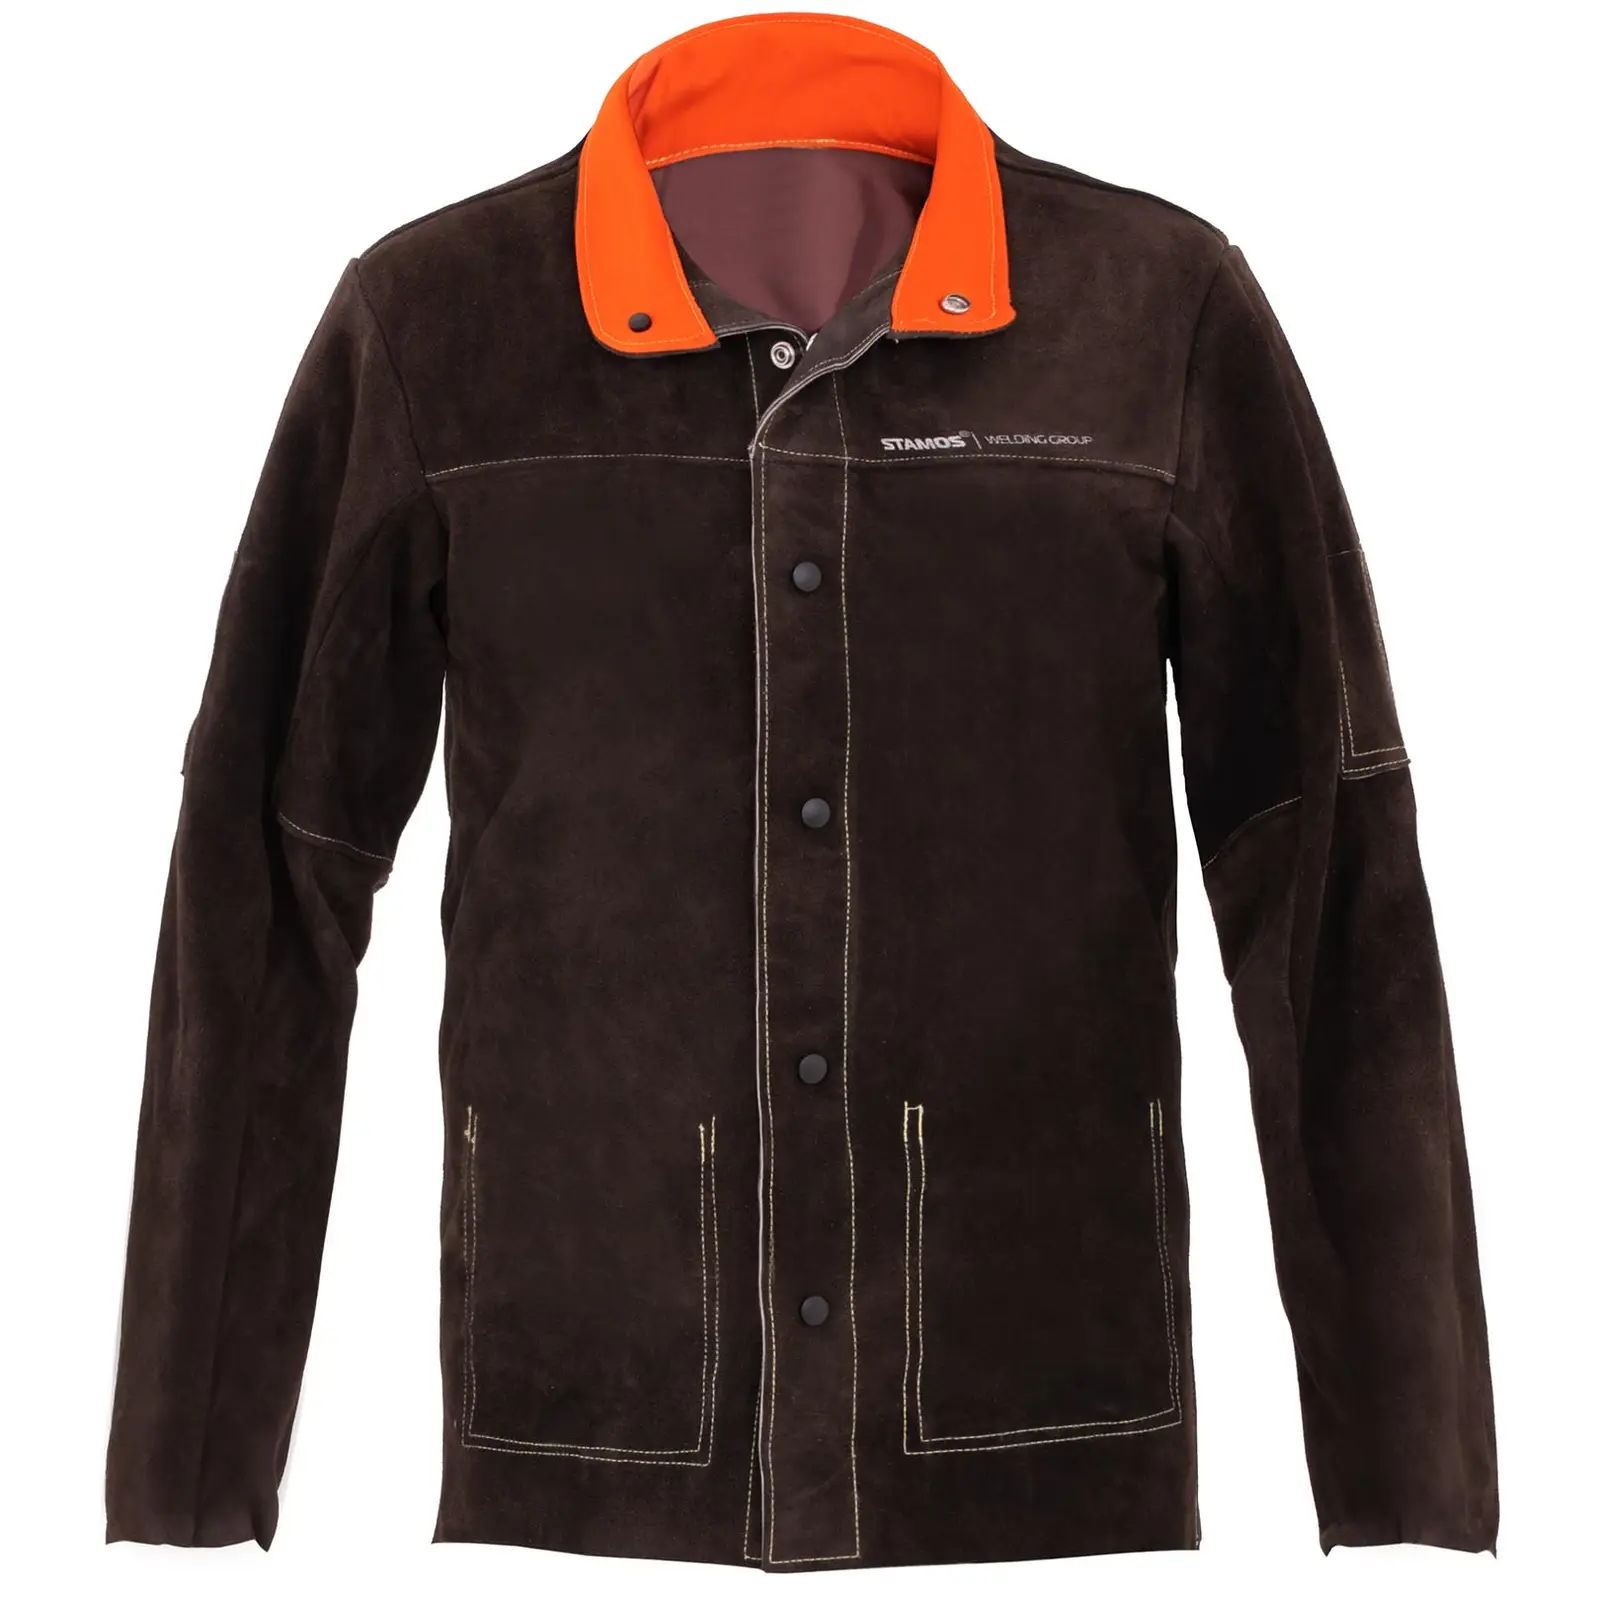 Cow Split Leather Welding Jacket - size L